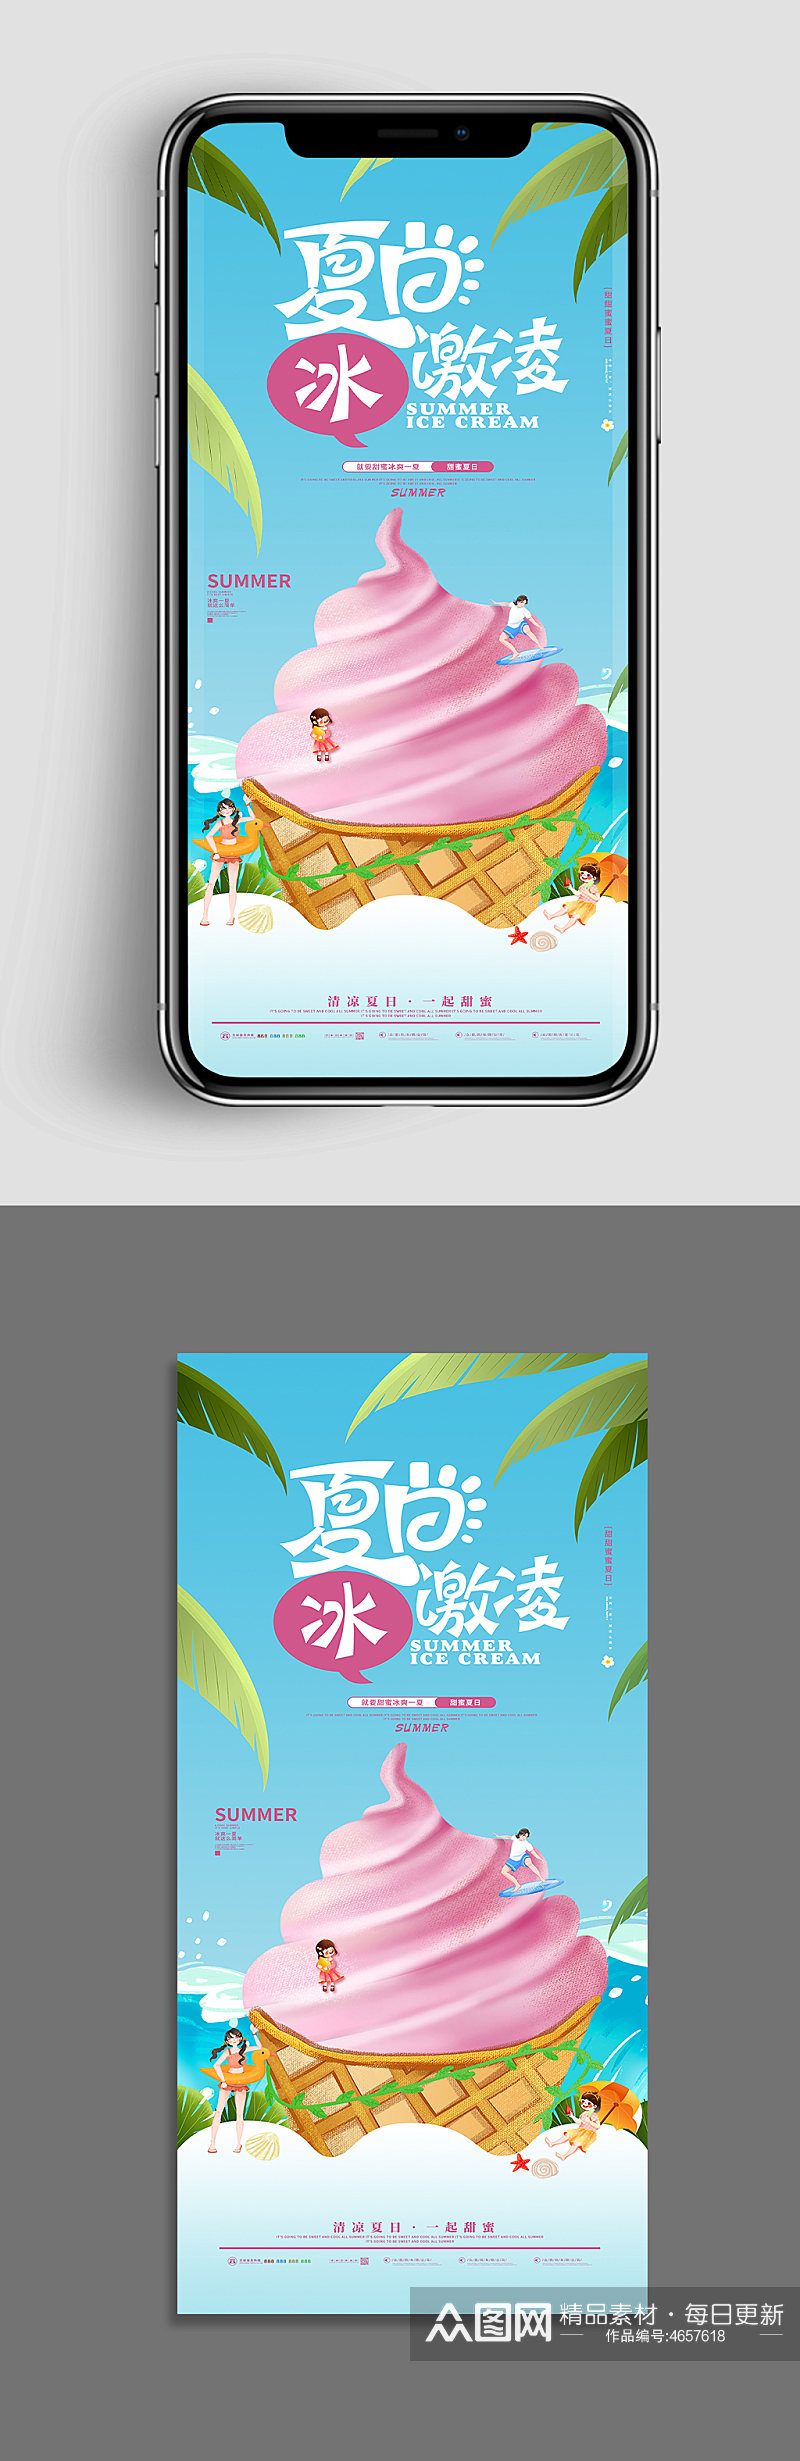 纯正夏日冰激凌夏季美食类UI手机海报素材